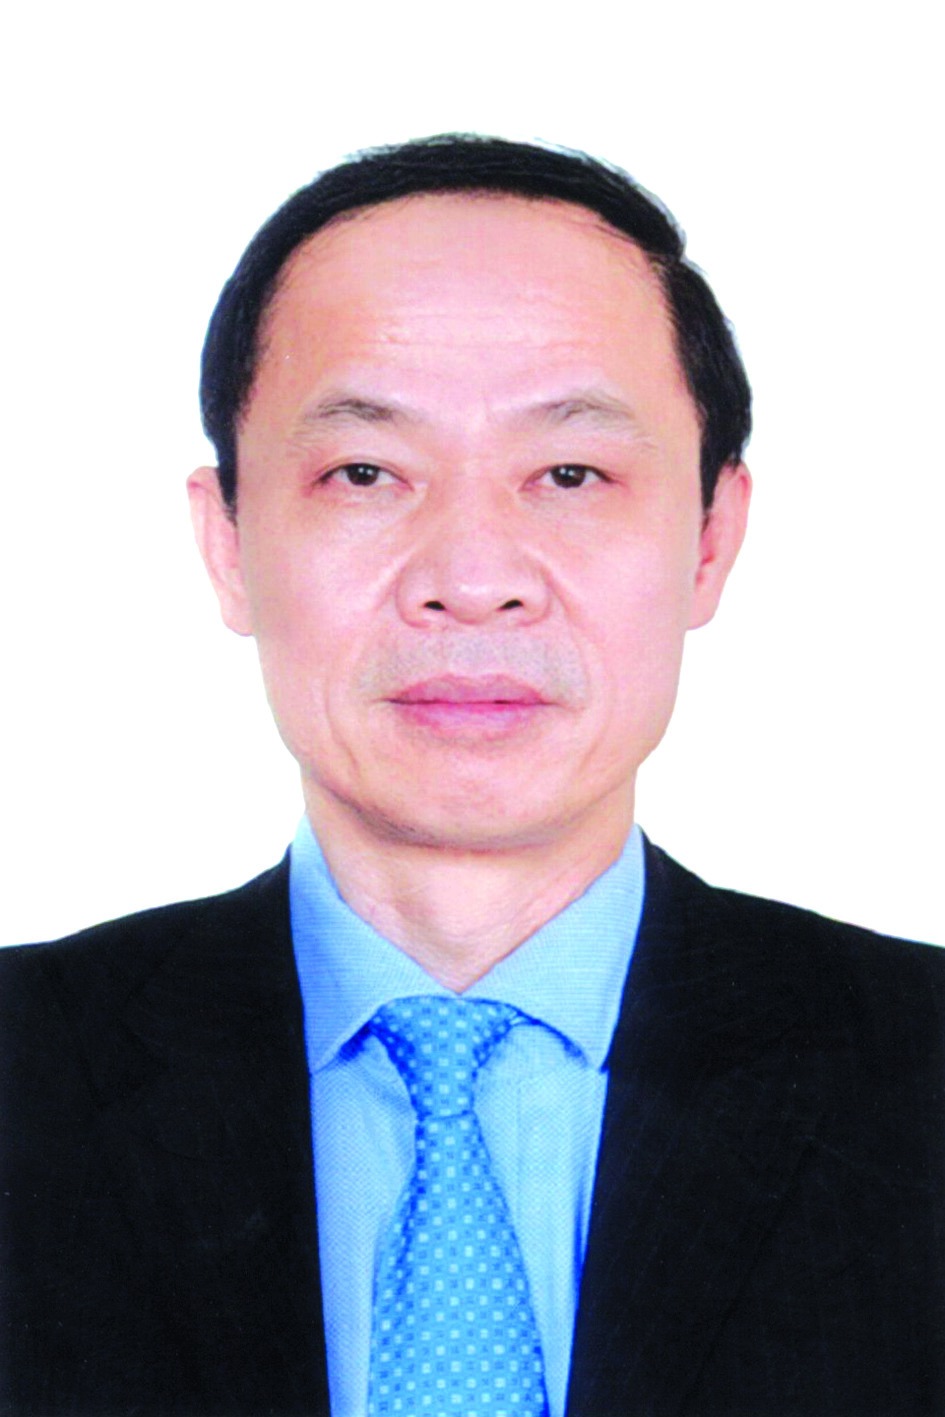 Chương trình hành động của Phó Giám đốc Sở Giáo dục và Đào tạo Nguyễn Quang Tuấn, ứng cử viên đại biểu HĐND TP Hà Nội nhiệm kỳ 2021 - 2026 - Ảnh 1